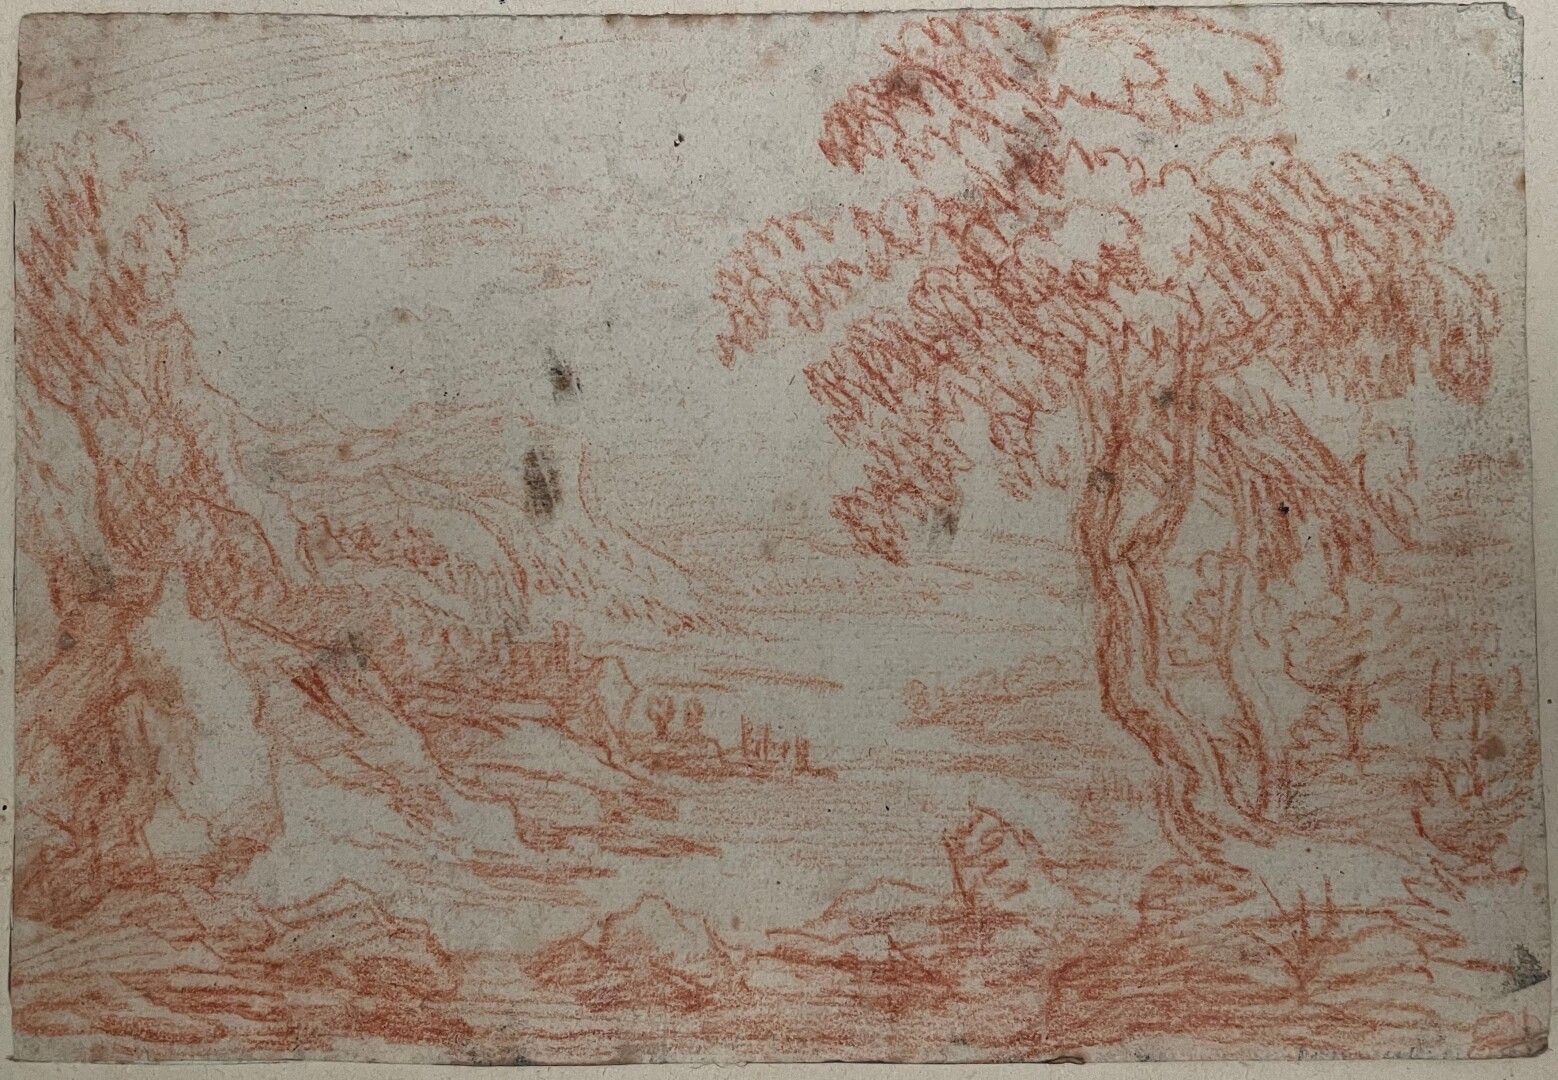 Null Schule des 18. Jahrhunderts

Landschaft

Sanguinisch

12,5 x 18,5 cm.